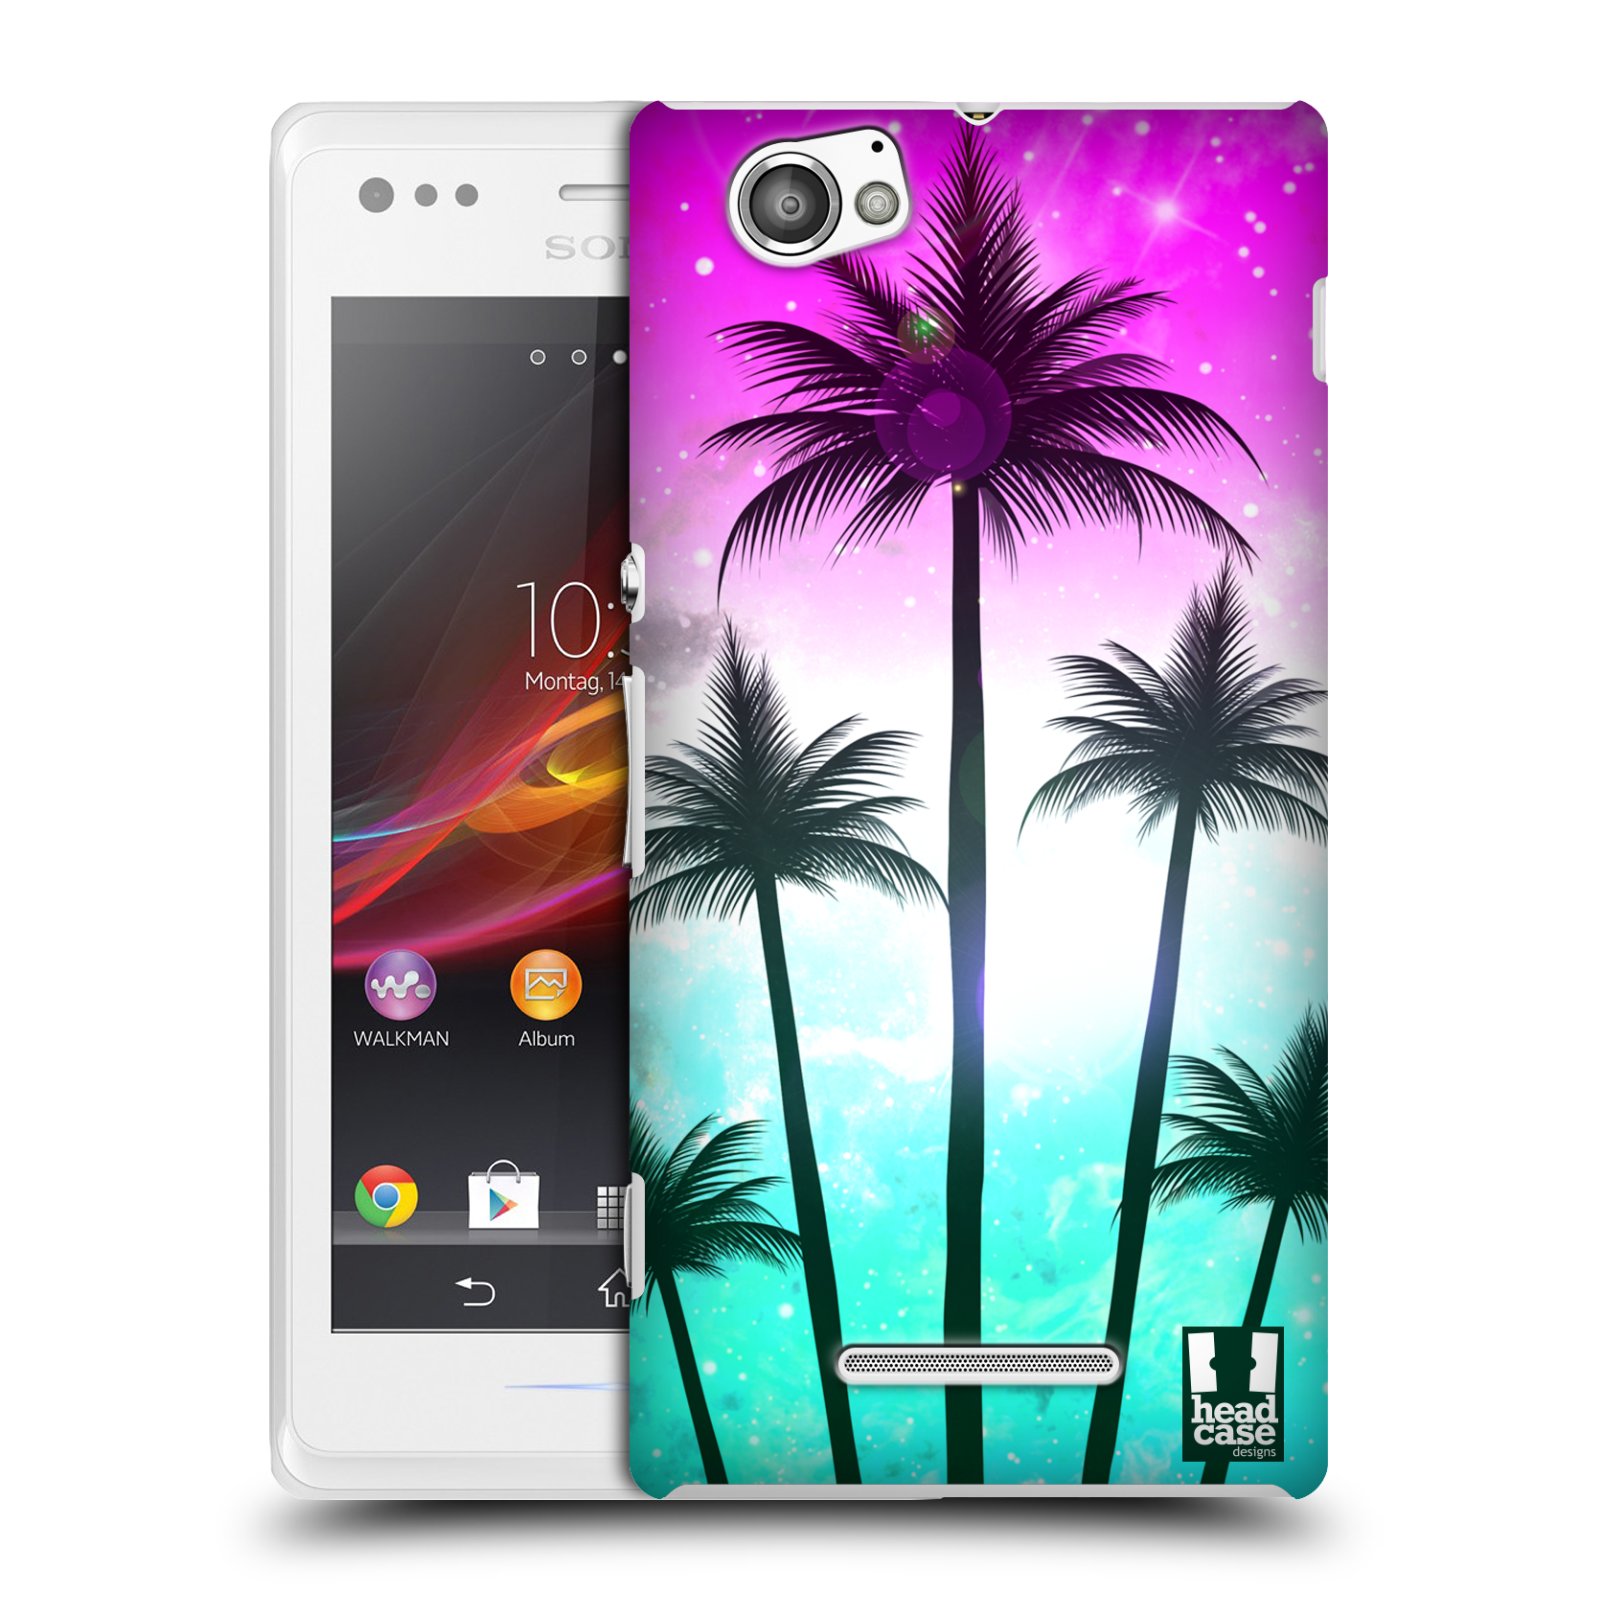 HEAD CASE plastový obal na mobil Sony Xperia M vzor Kreslený motiv silueta moře a palmy RŮŽOVÁ A TYRKYS